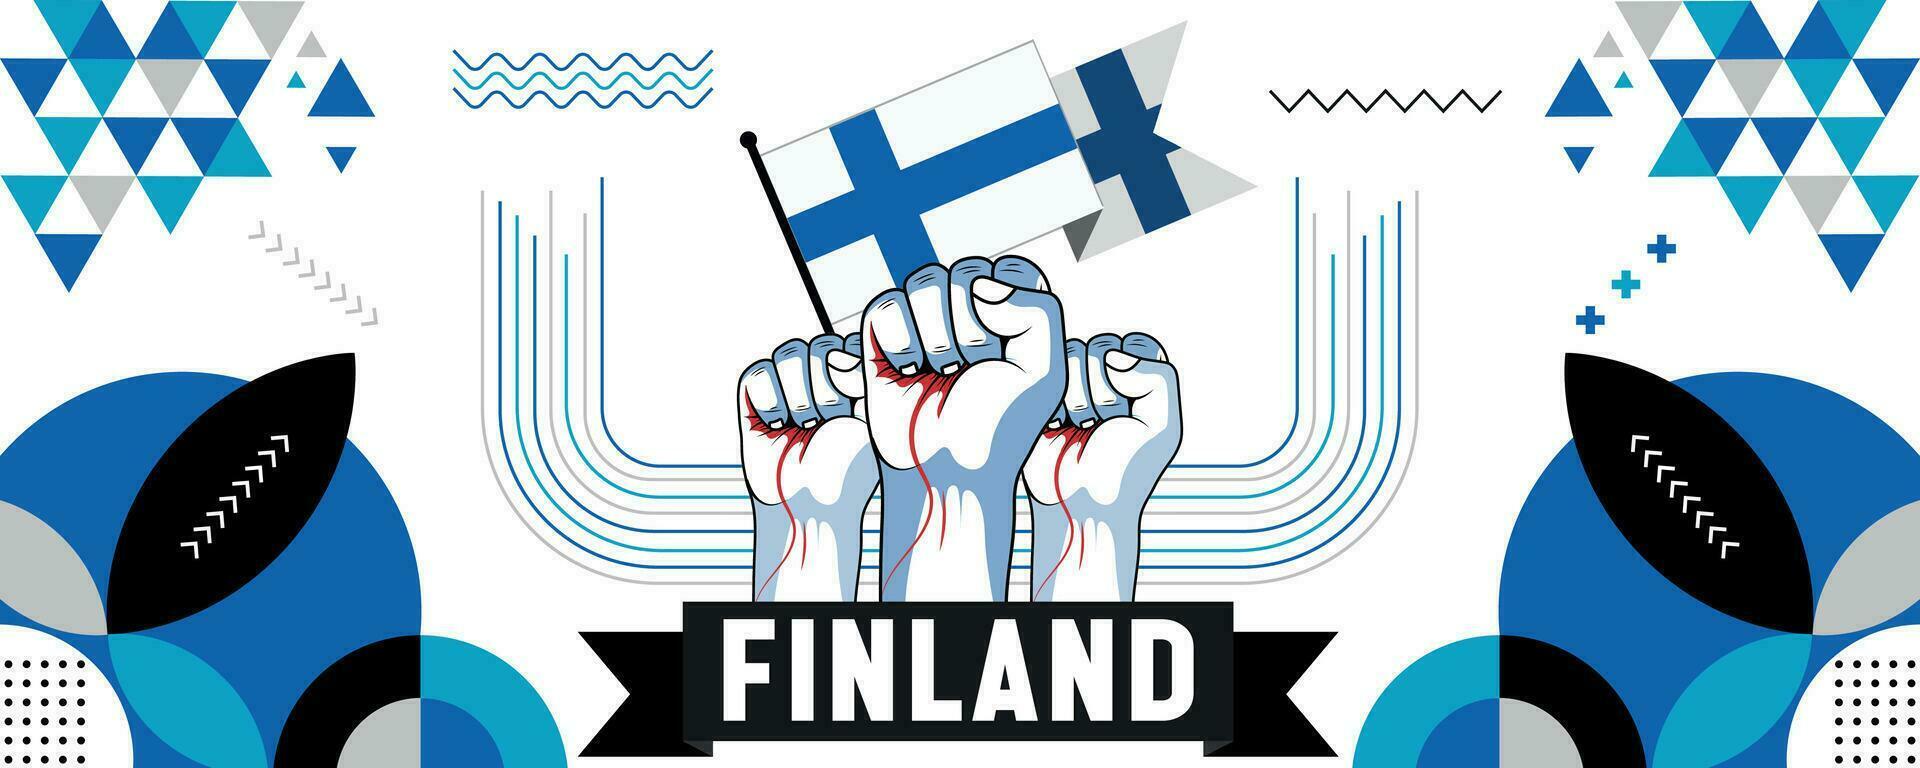 Finlândia nacional ou independência dia bandeira Projeto para país celebração. bandeira e mapa do Finlândia com elevado punhos. moderno retro Projeto com abstrato geométrico ícones. vetor ilustração.